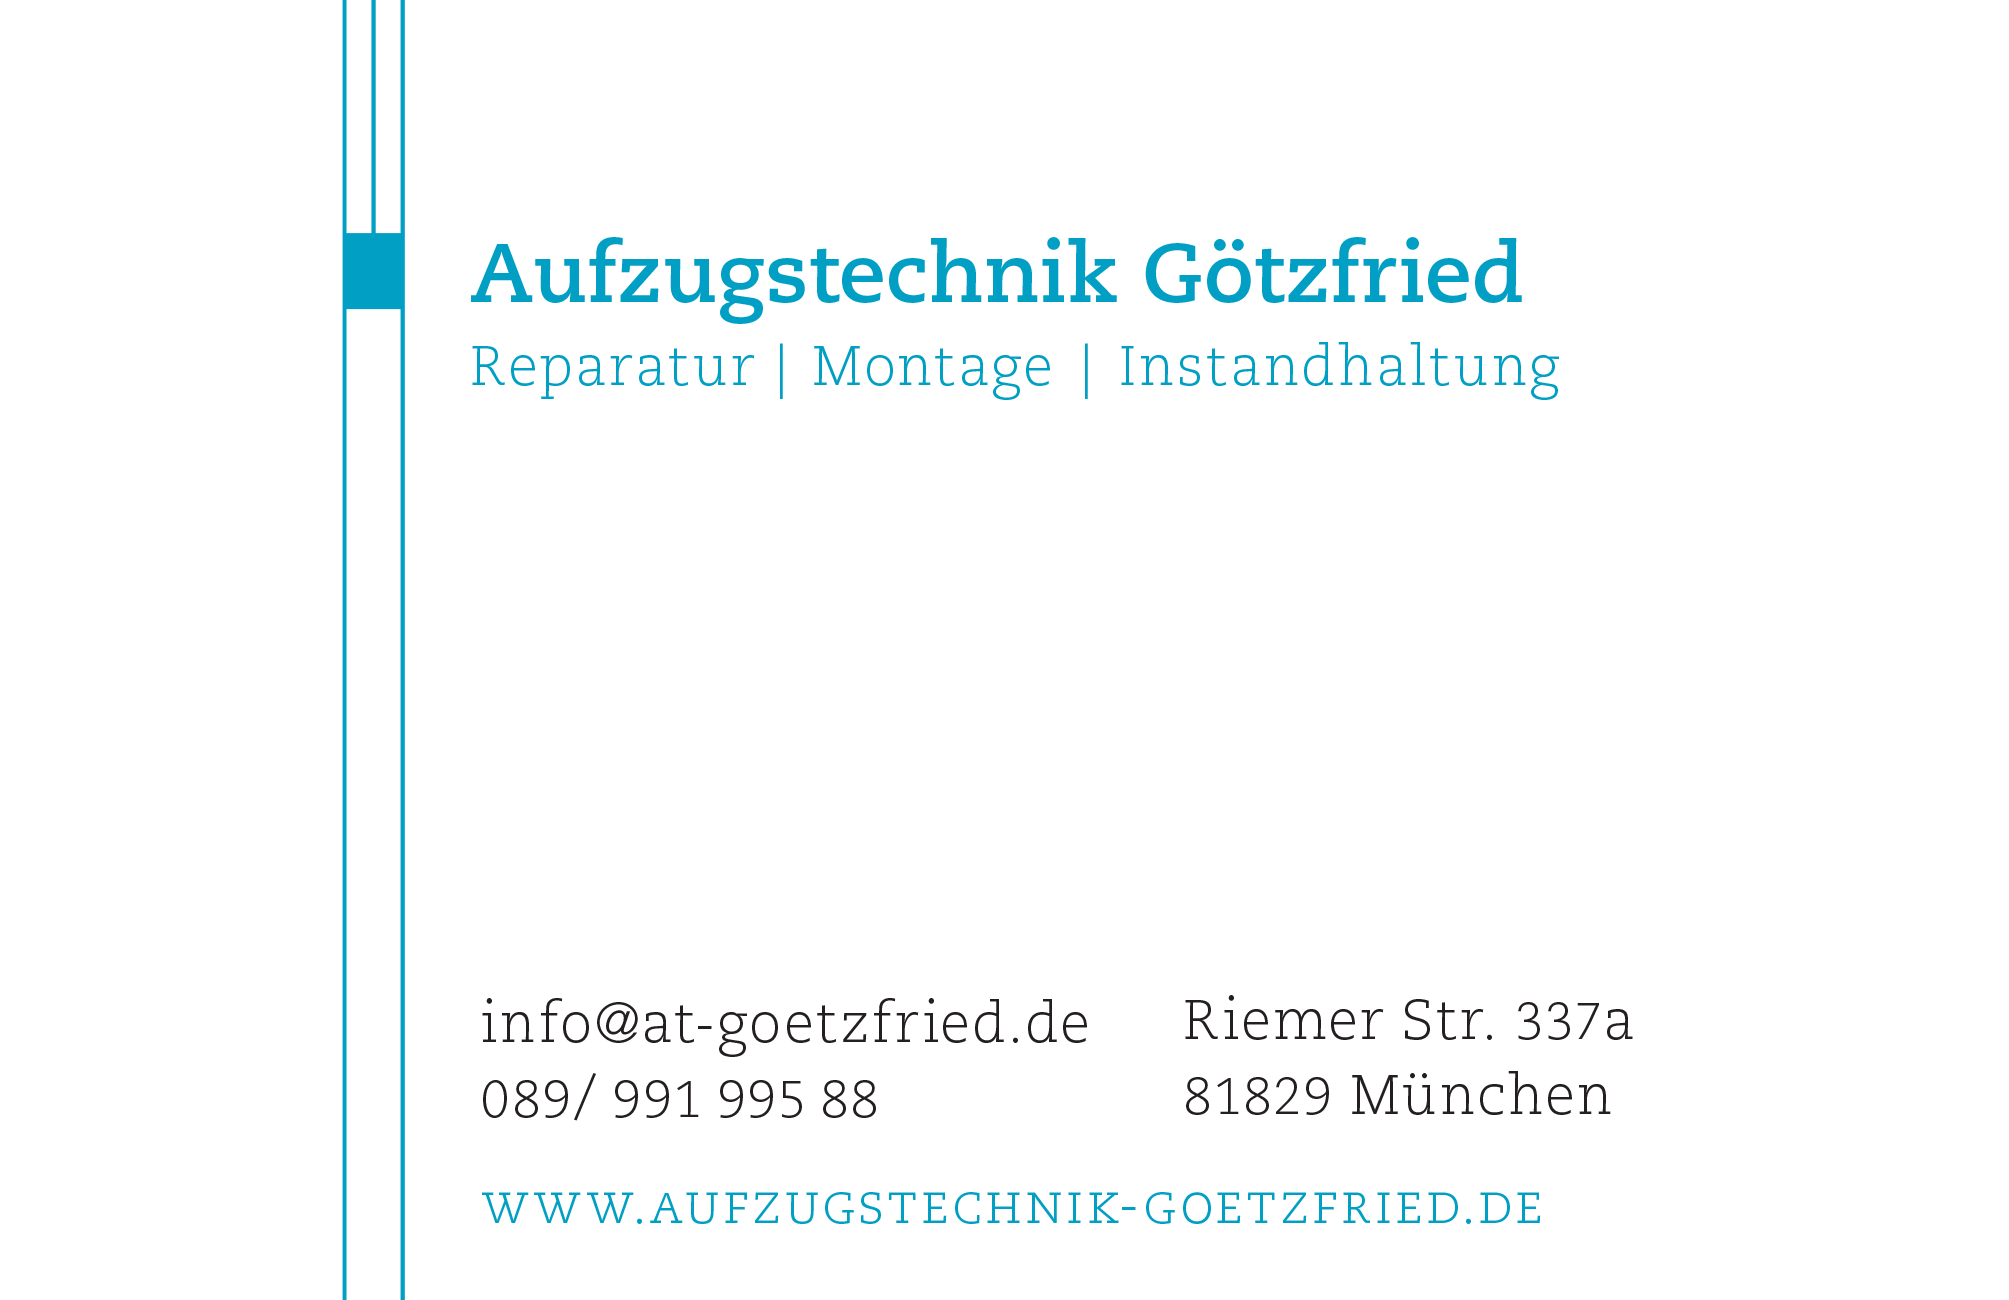 Aufzugstechnik Götzfried – Riemer Str. 337a, 81829 München – 089/ 991 995 88